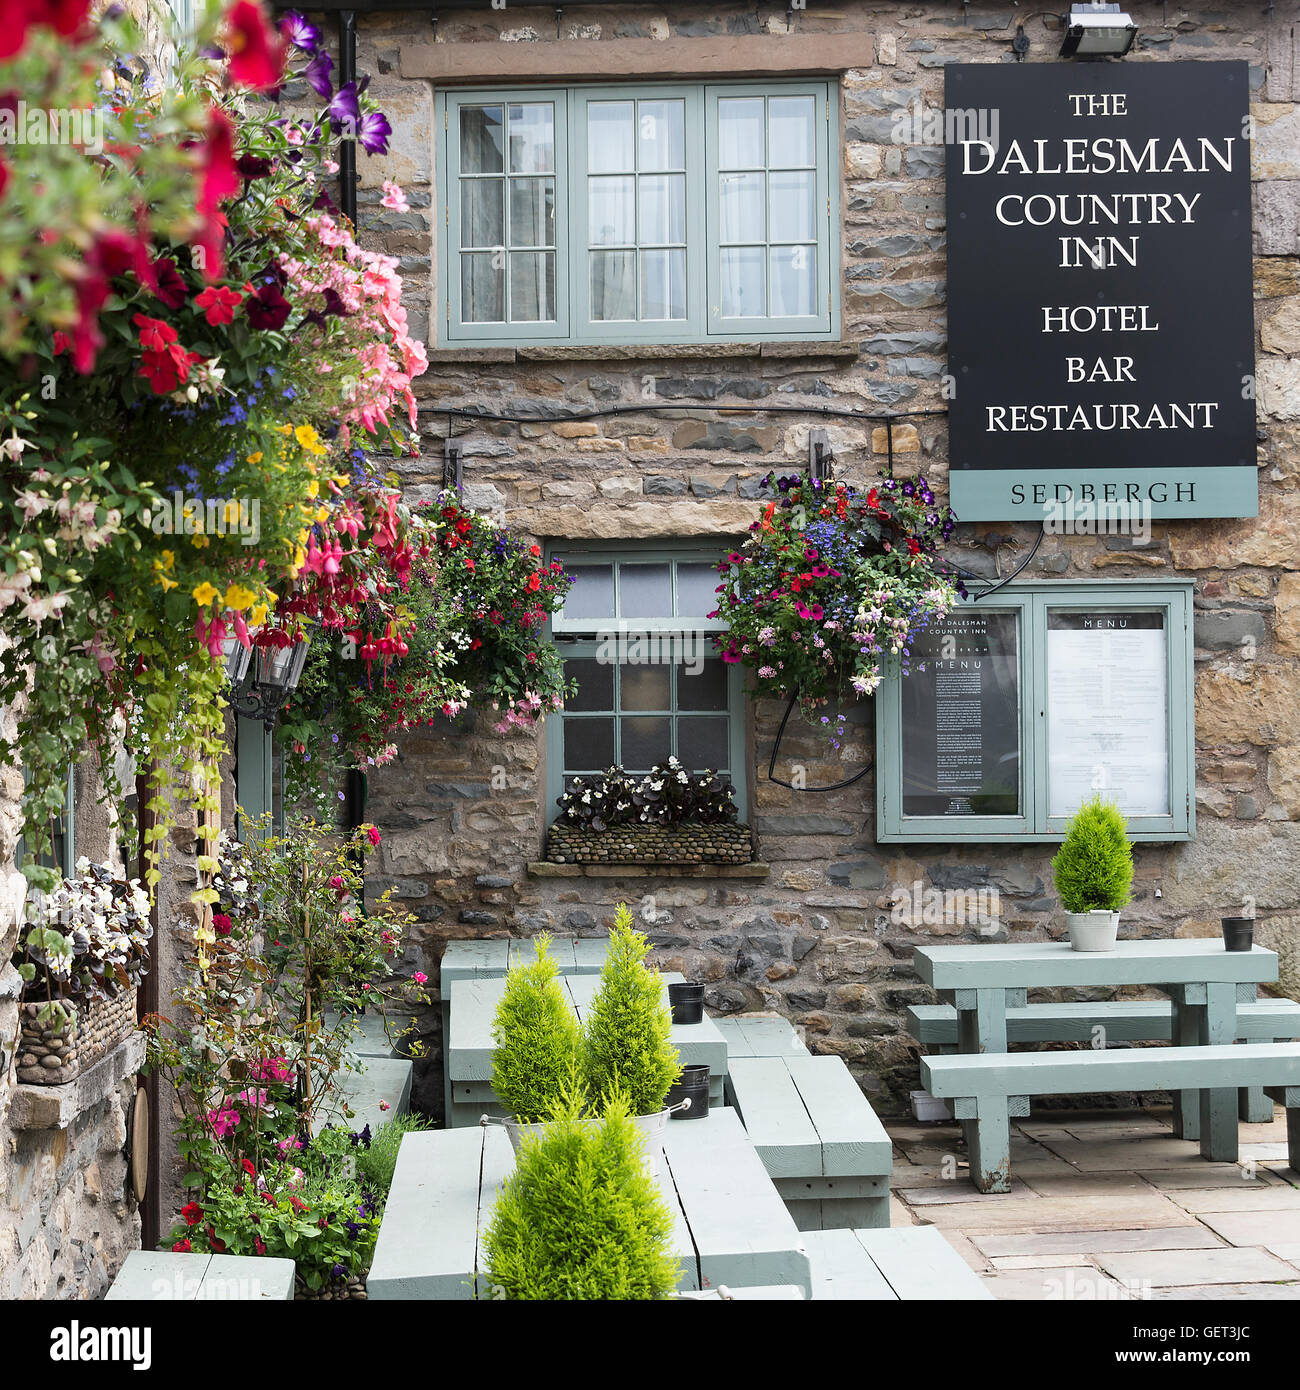 Le magnifique Dalesman Country Inn, Hôtel, Bar et Restaurant à Sedbergh Cumbria, Yorkshire Dales Angleterre Royaume-Uni Banque D'Images